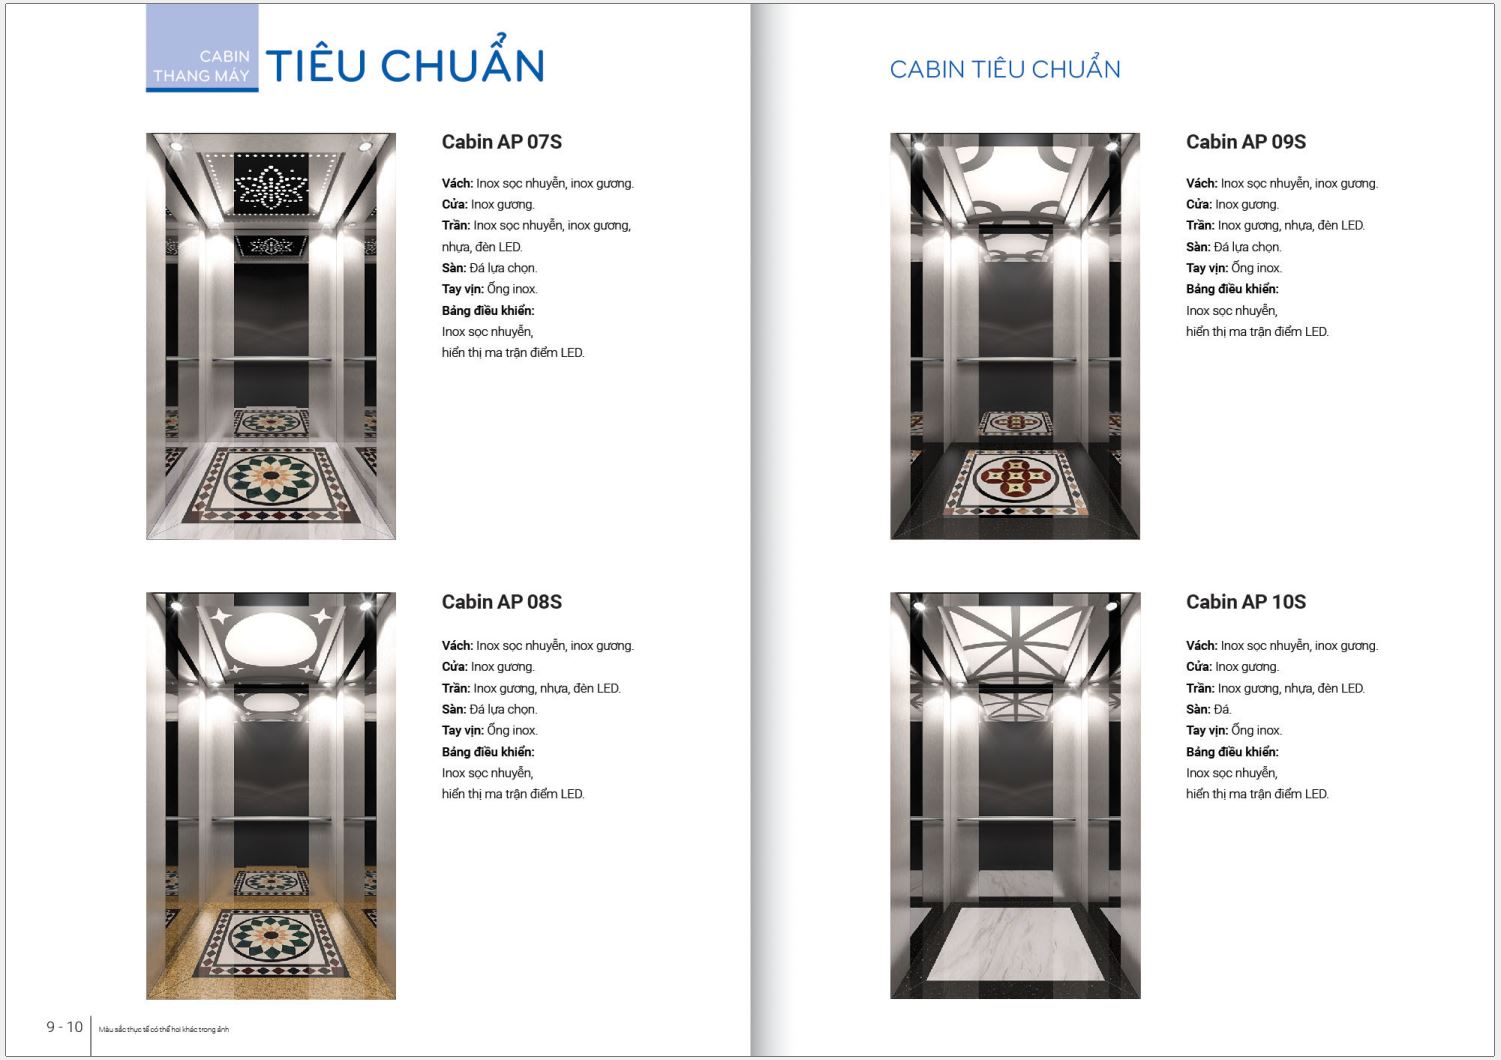 Mẫu Cabin tiêu chuẩn của thang máy Ecofuji